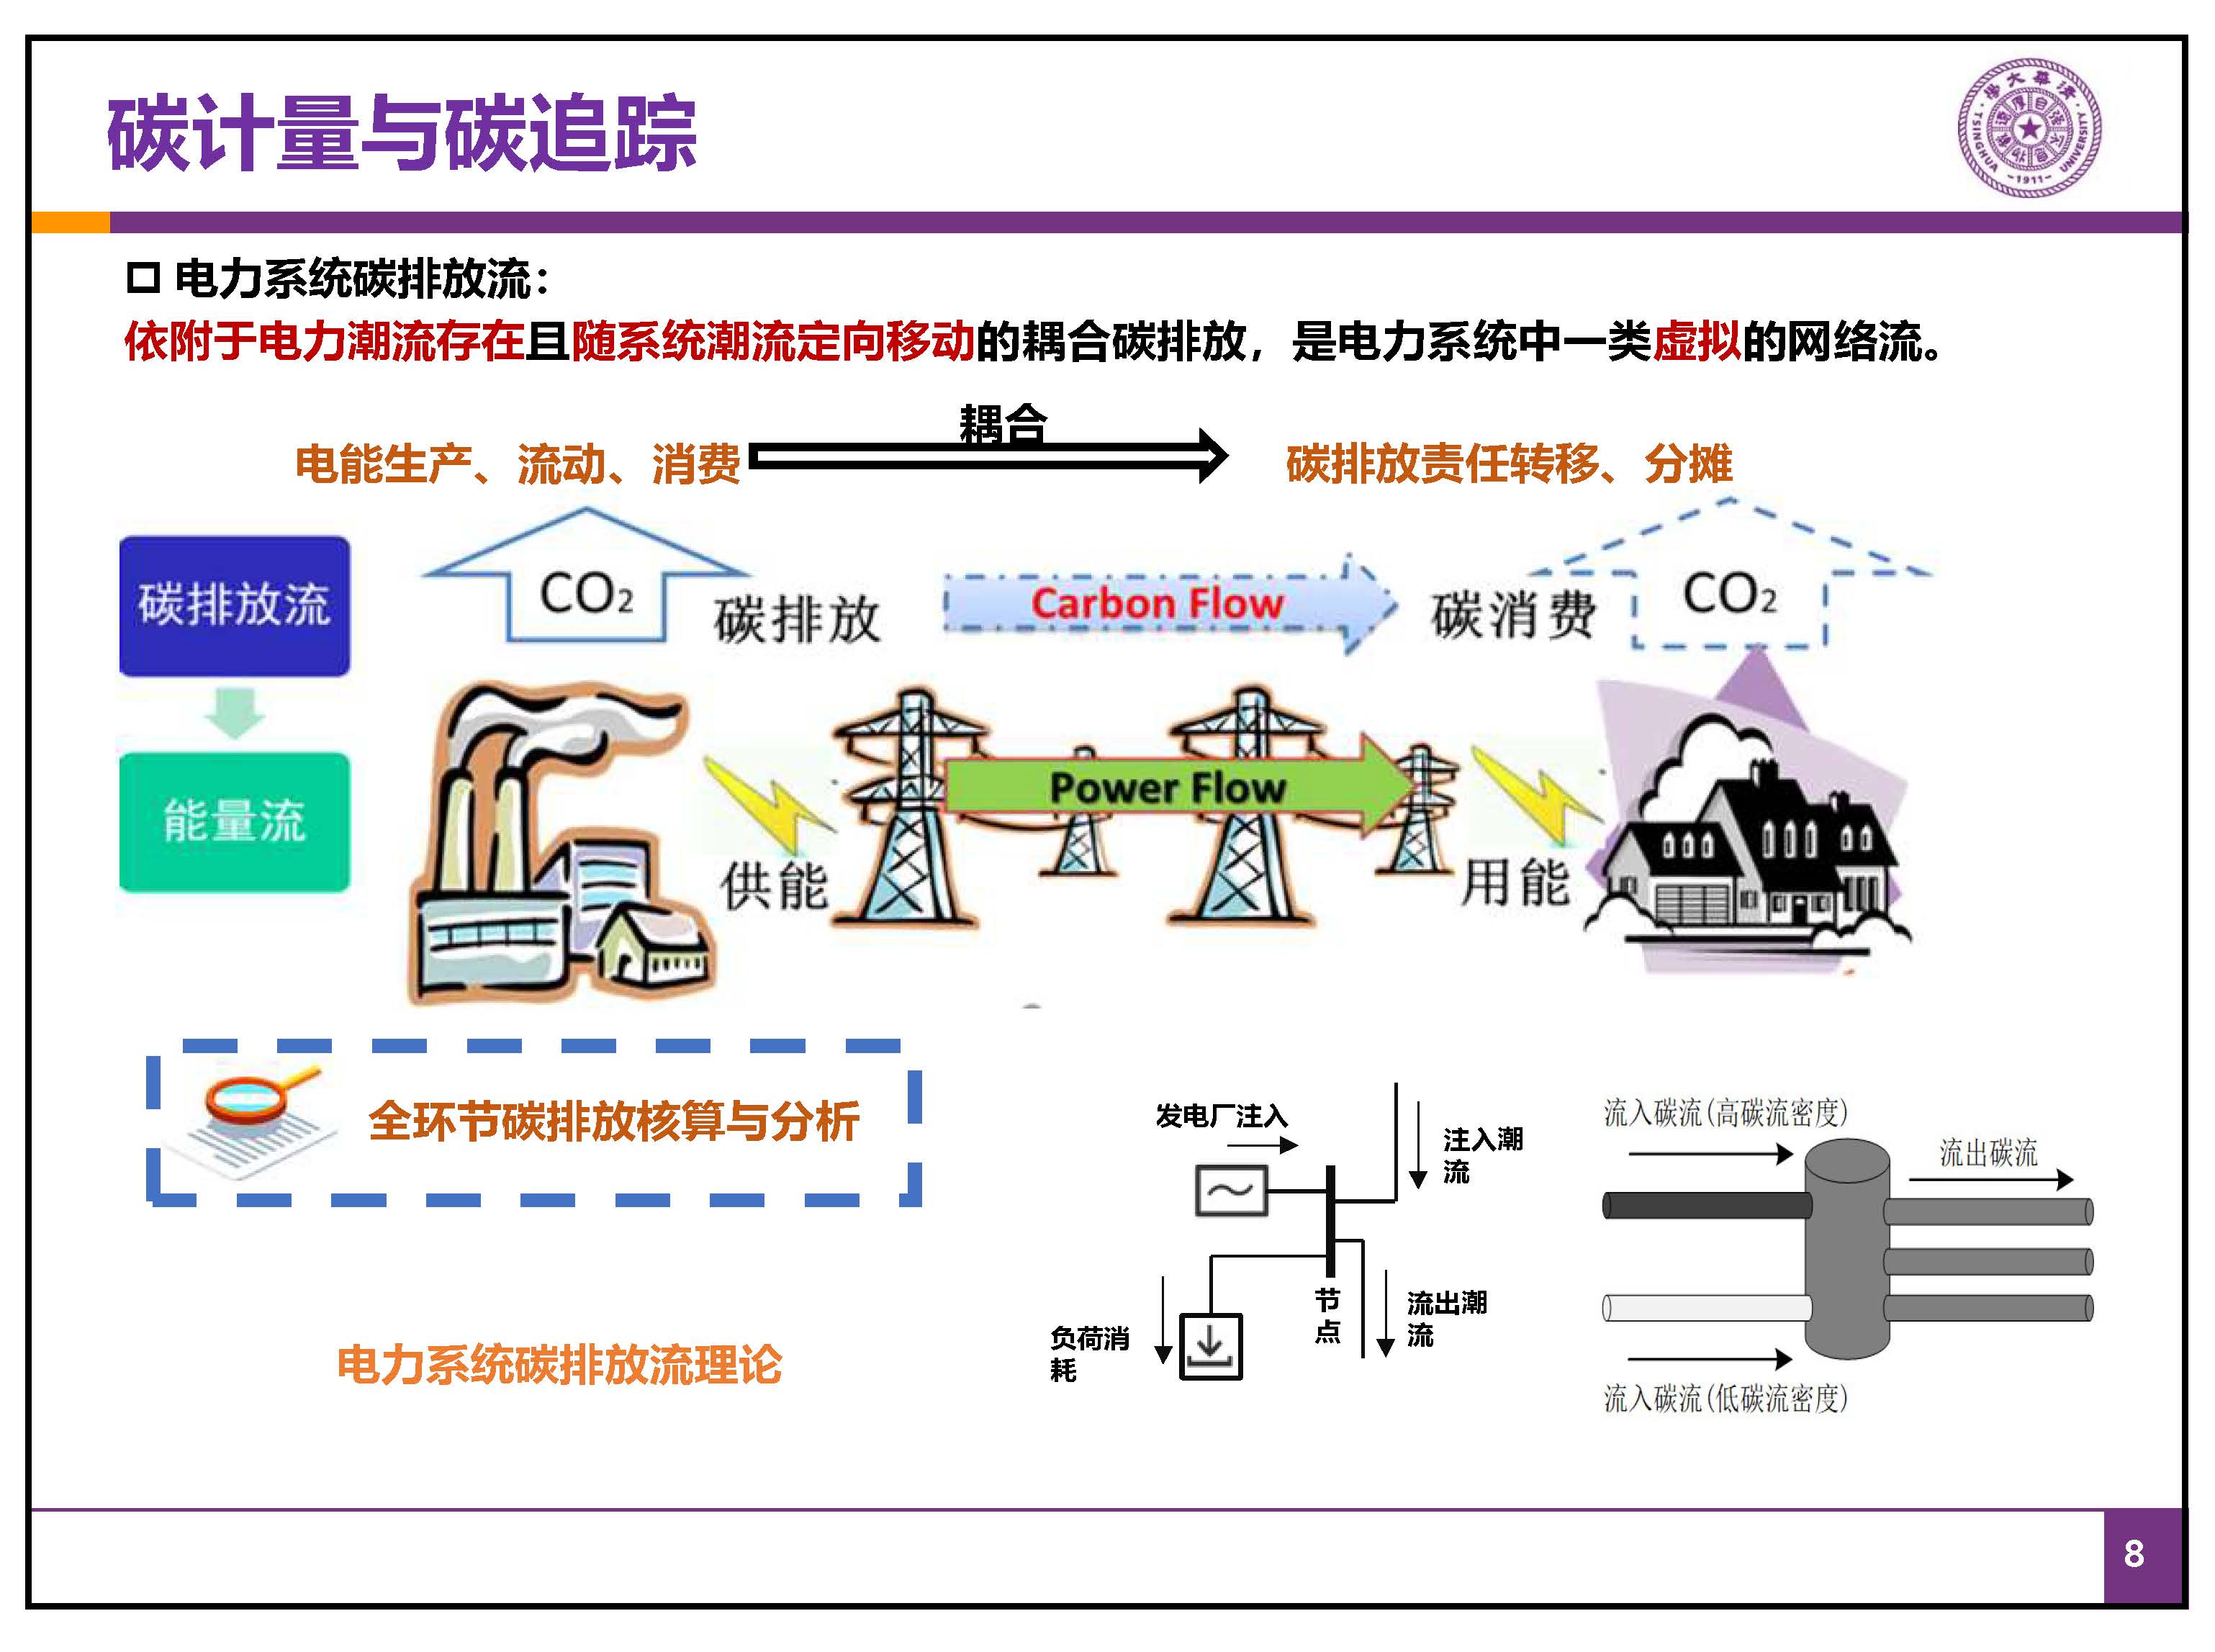 新型电力系统之“碳路”-中国能源研究会-康重庆(拆页2)_页面_08.jpg